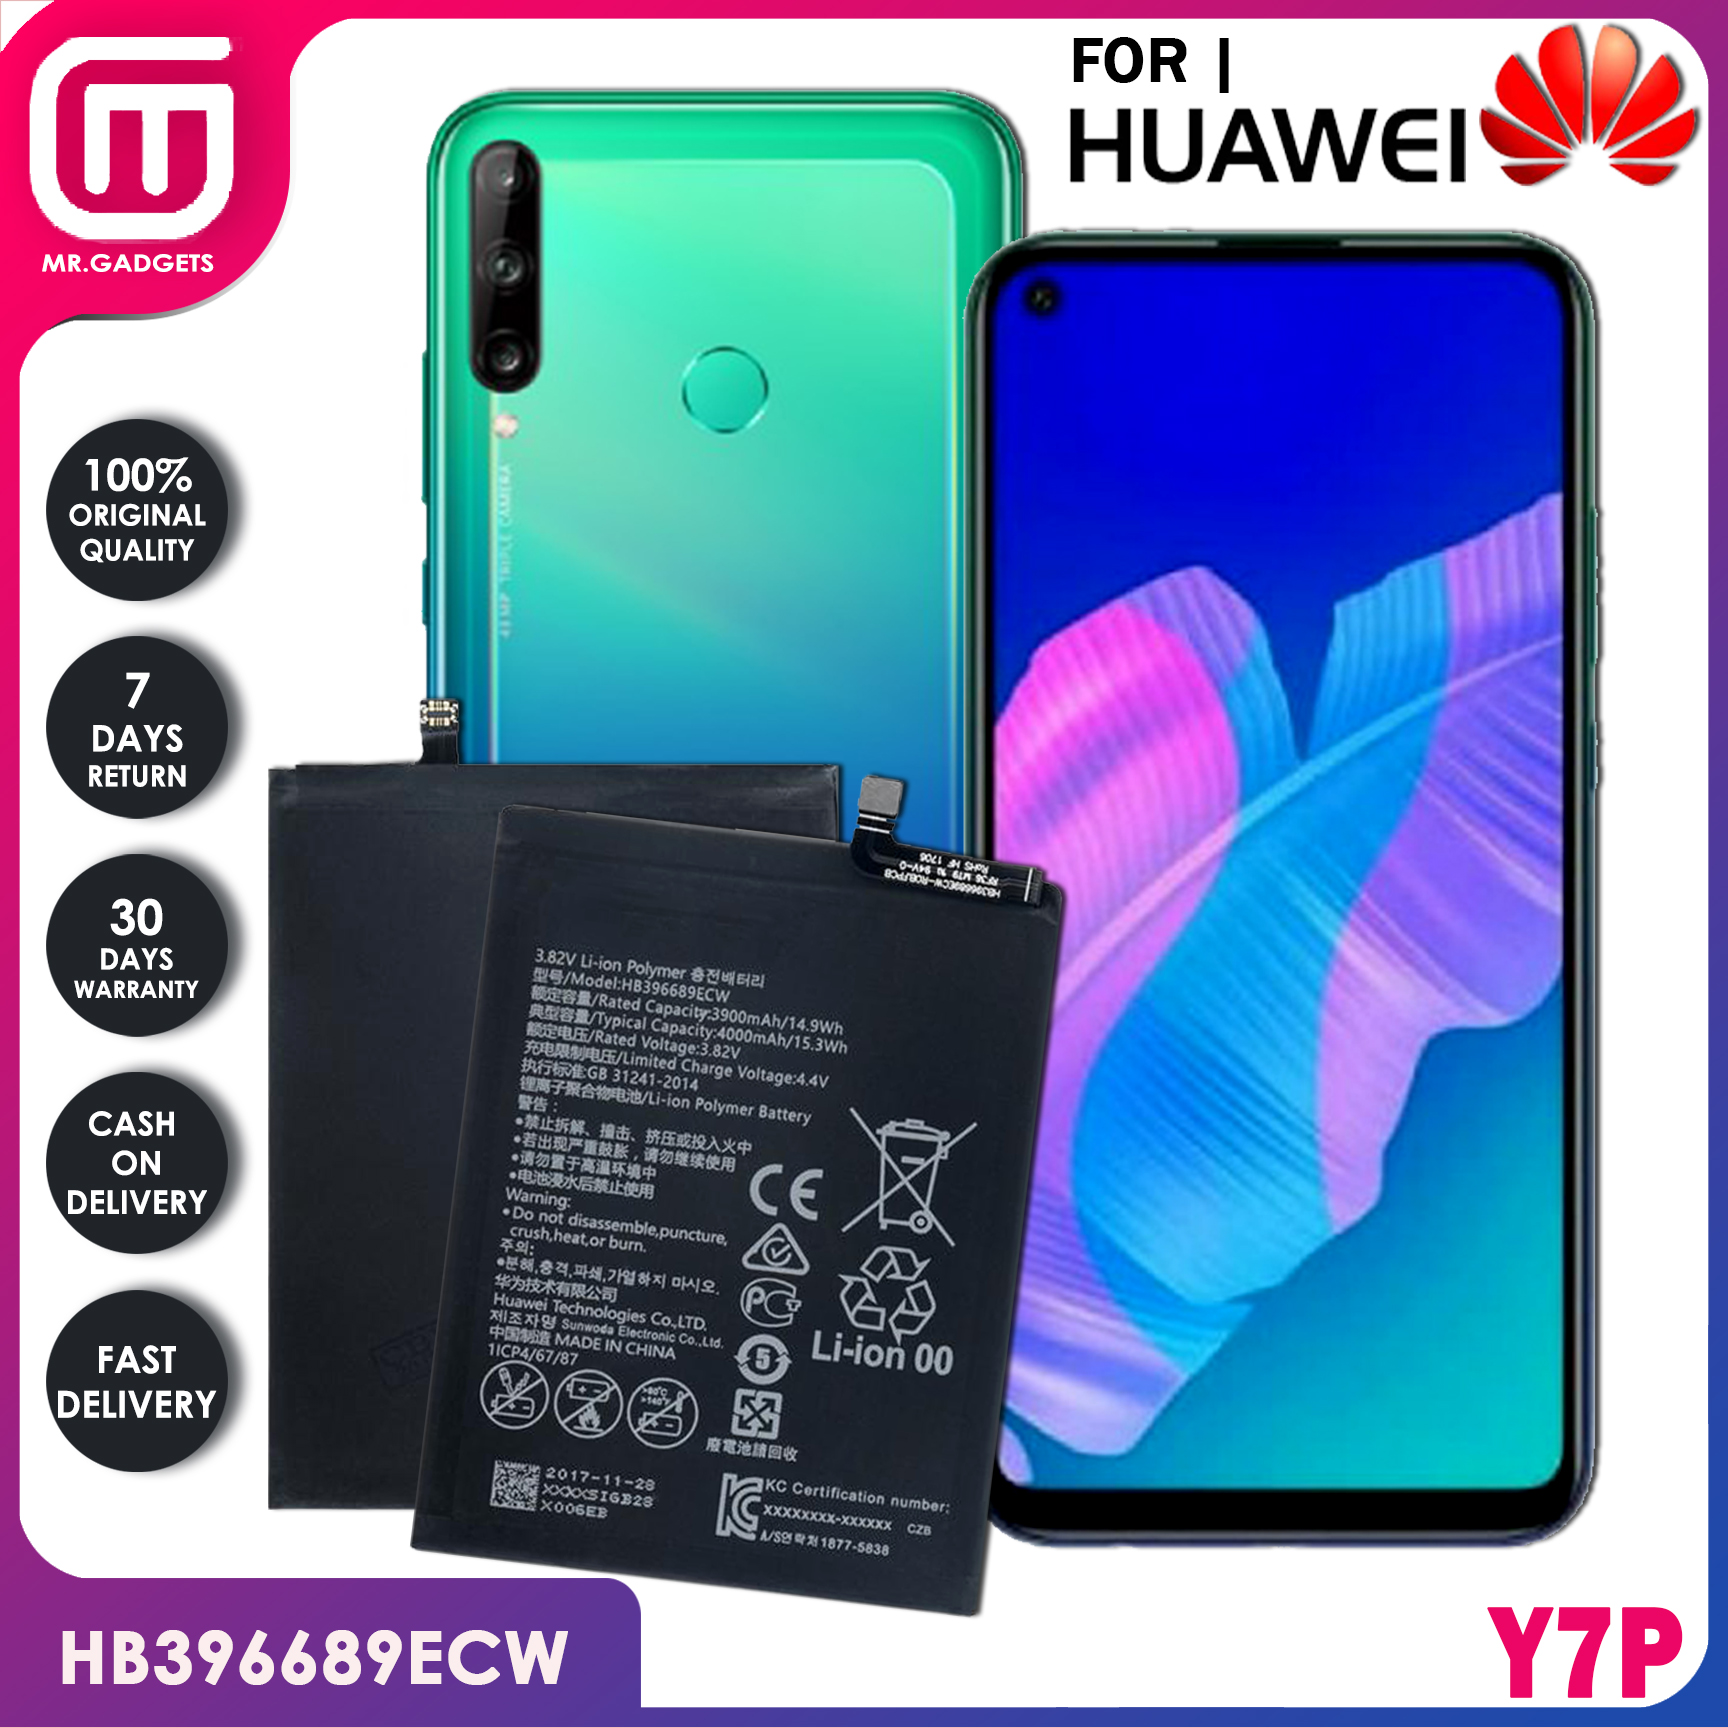 Huawei y7p